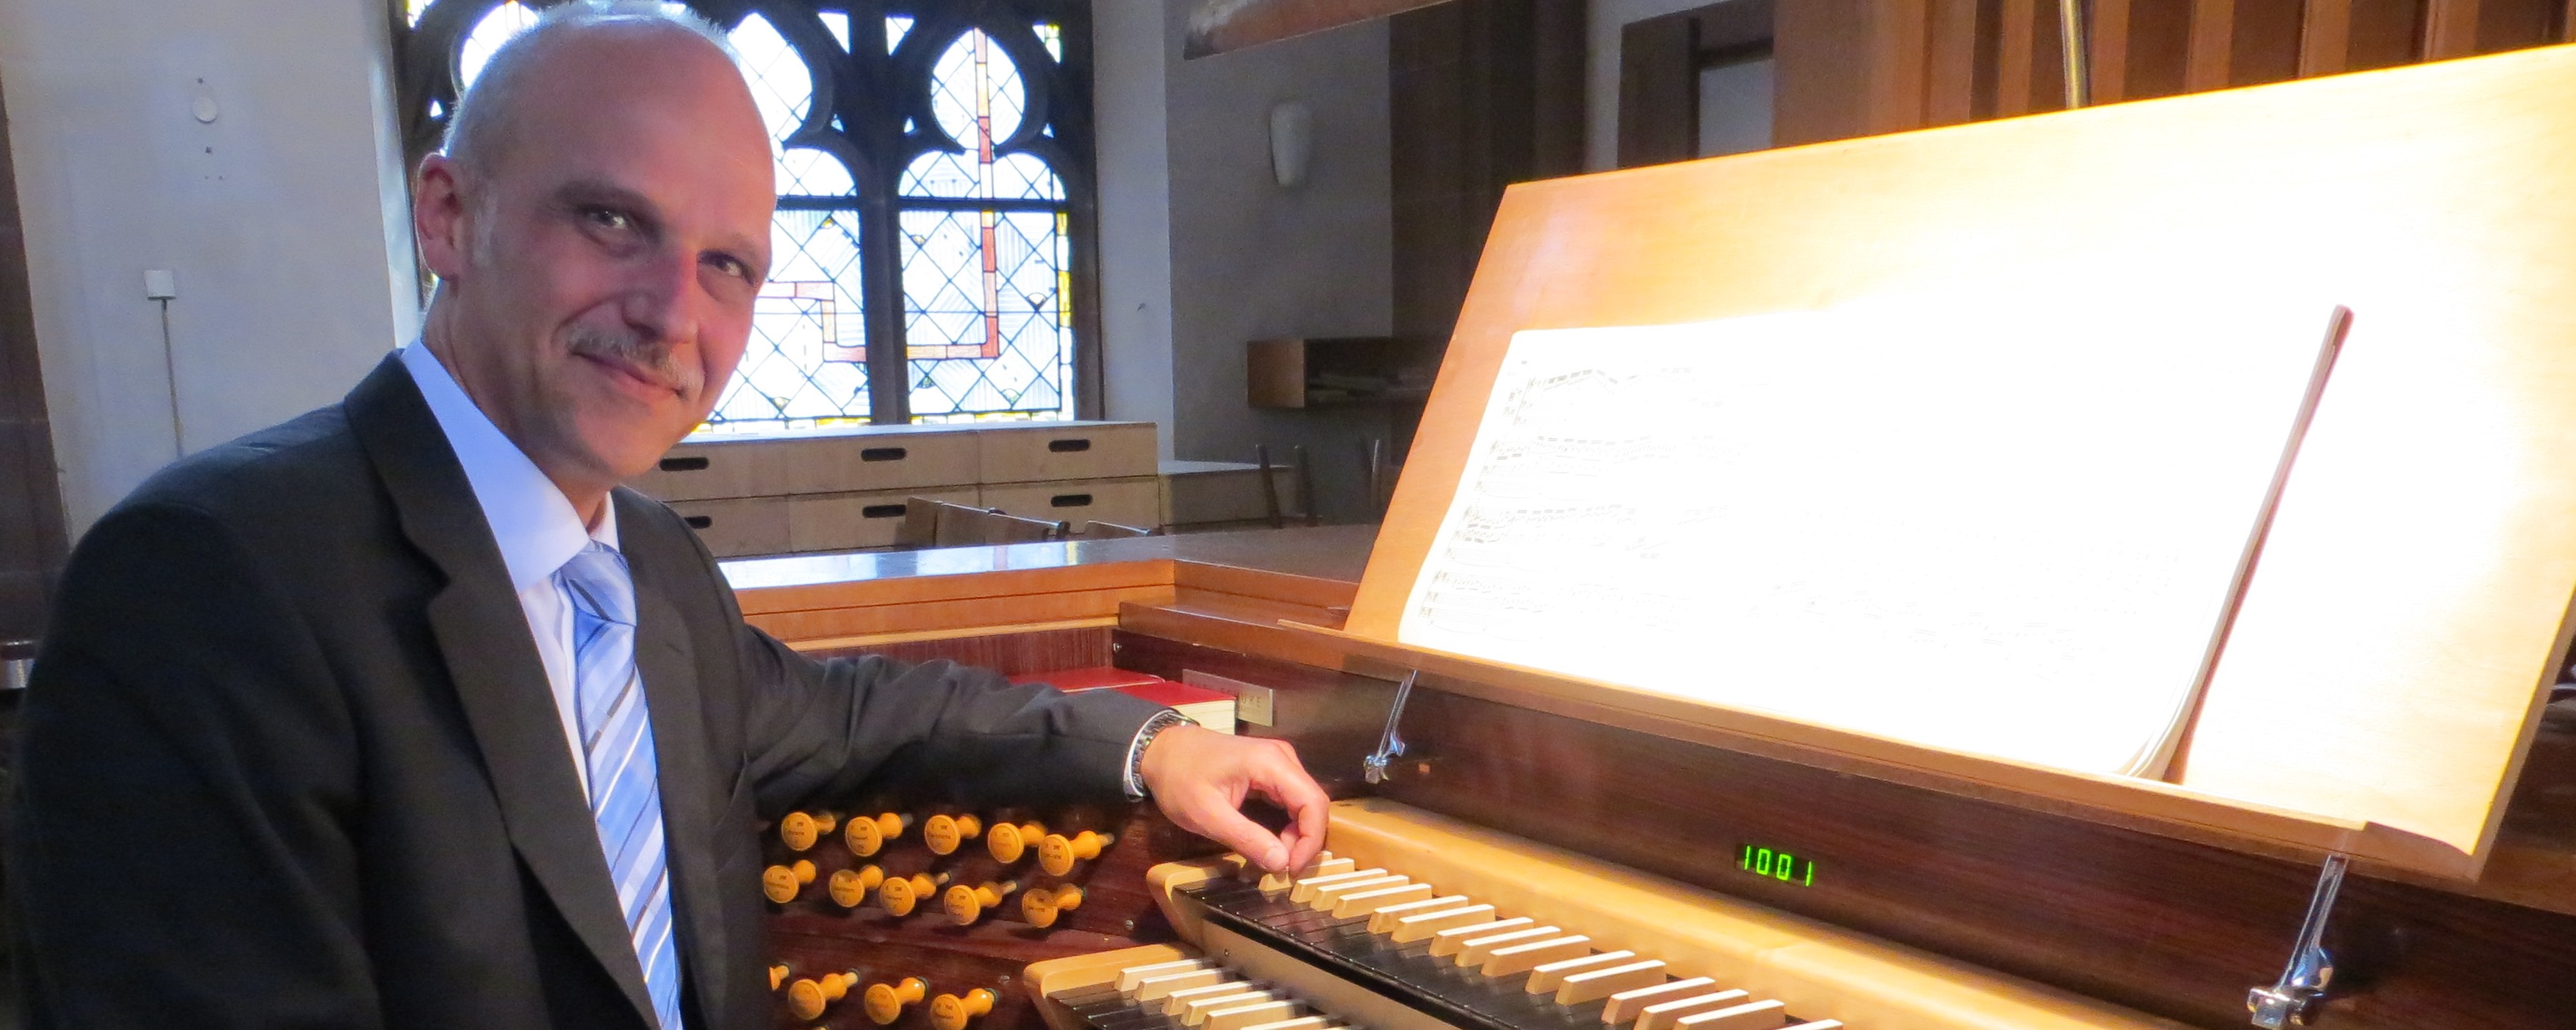 Kantor Andreas Köhs an der Schuke-Orgel der Dreikönigskirche Frankfurt am Main